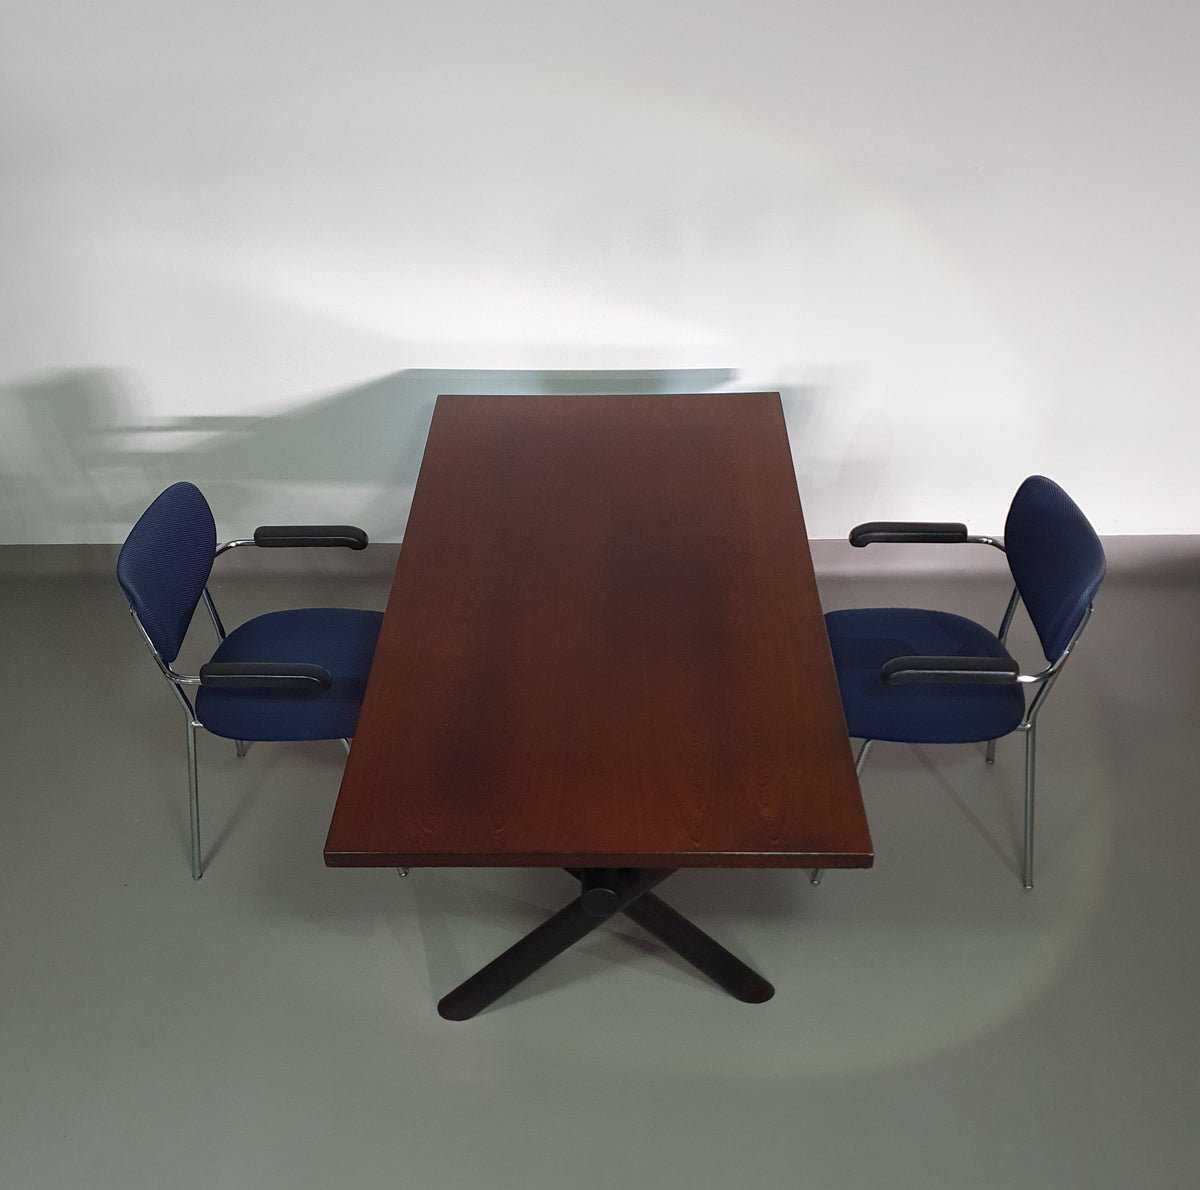 Gerard Geytenbeek 
Rare rectangle table for AZS MEUBELEN 90 x 165 x height 71 cm